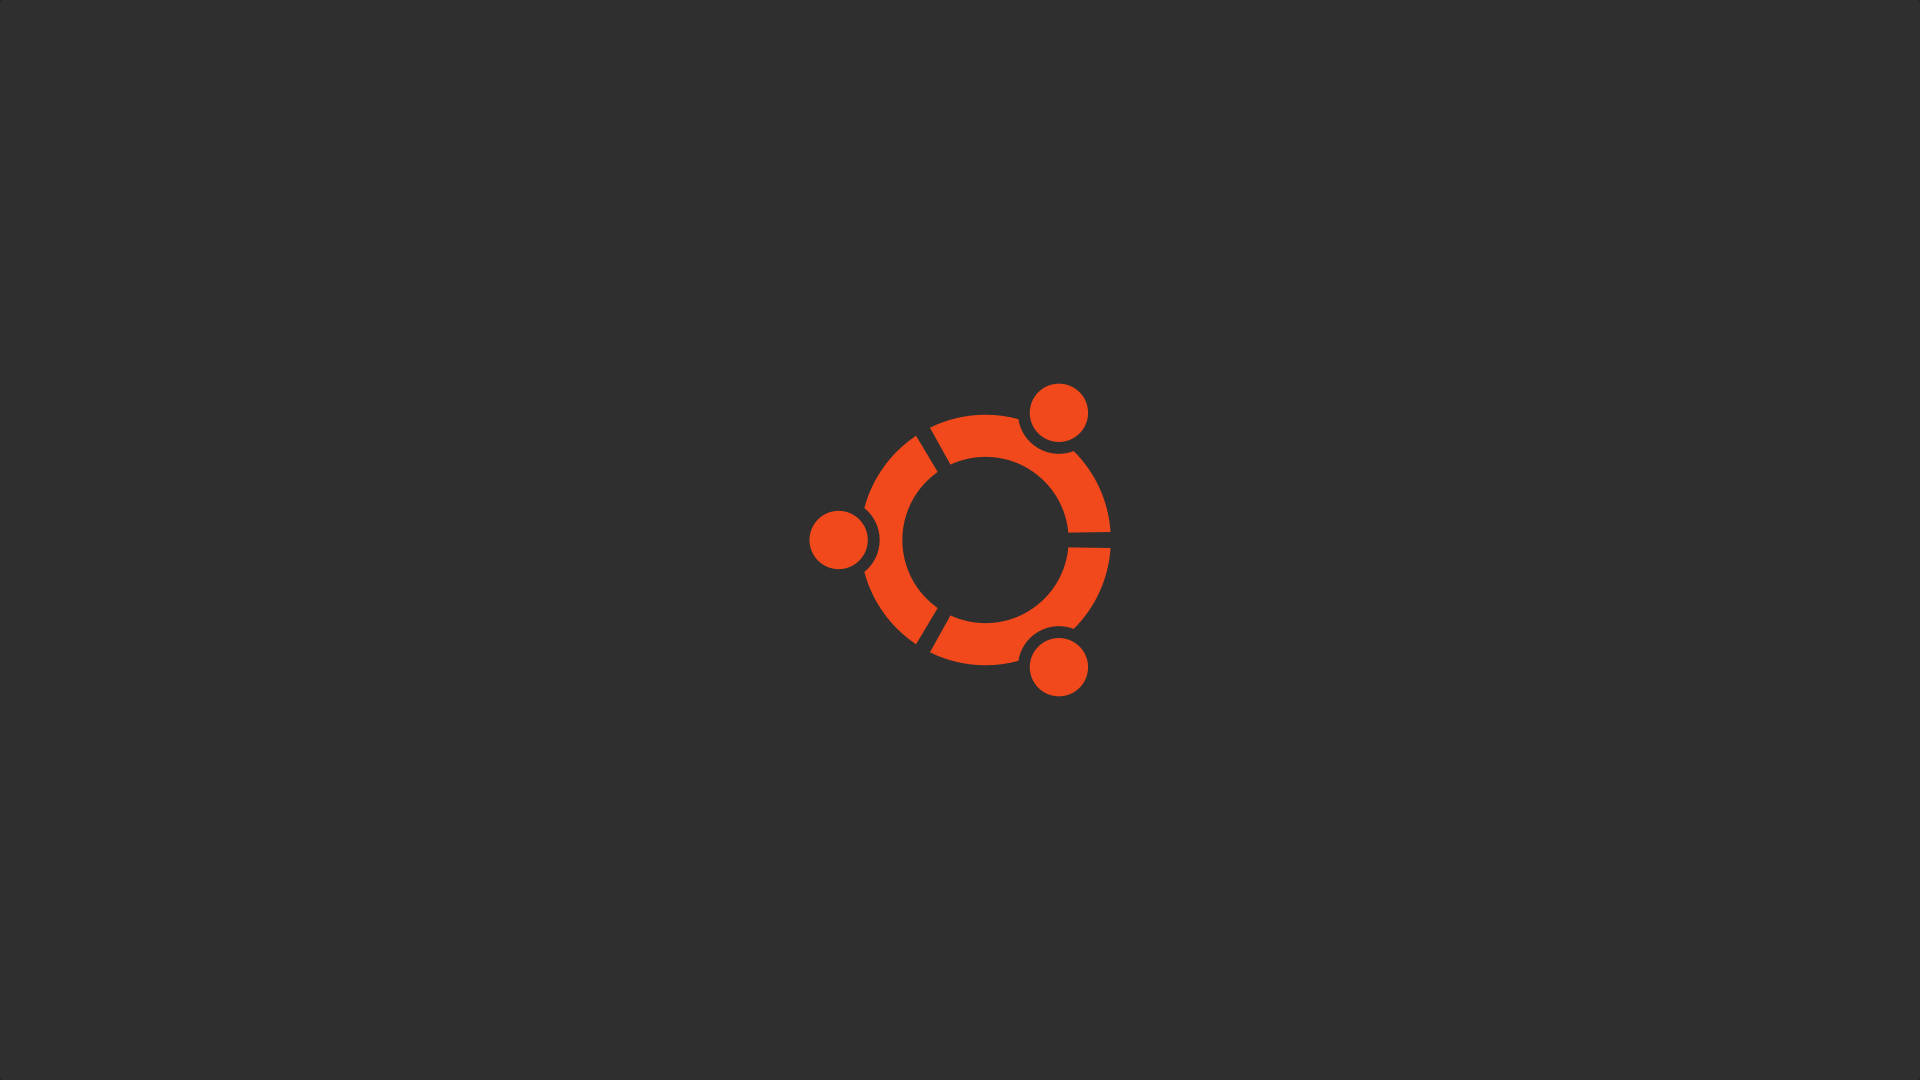 Ubuntu Orange Circle Logo Background